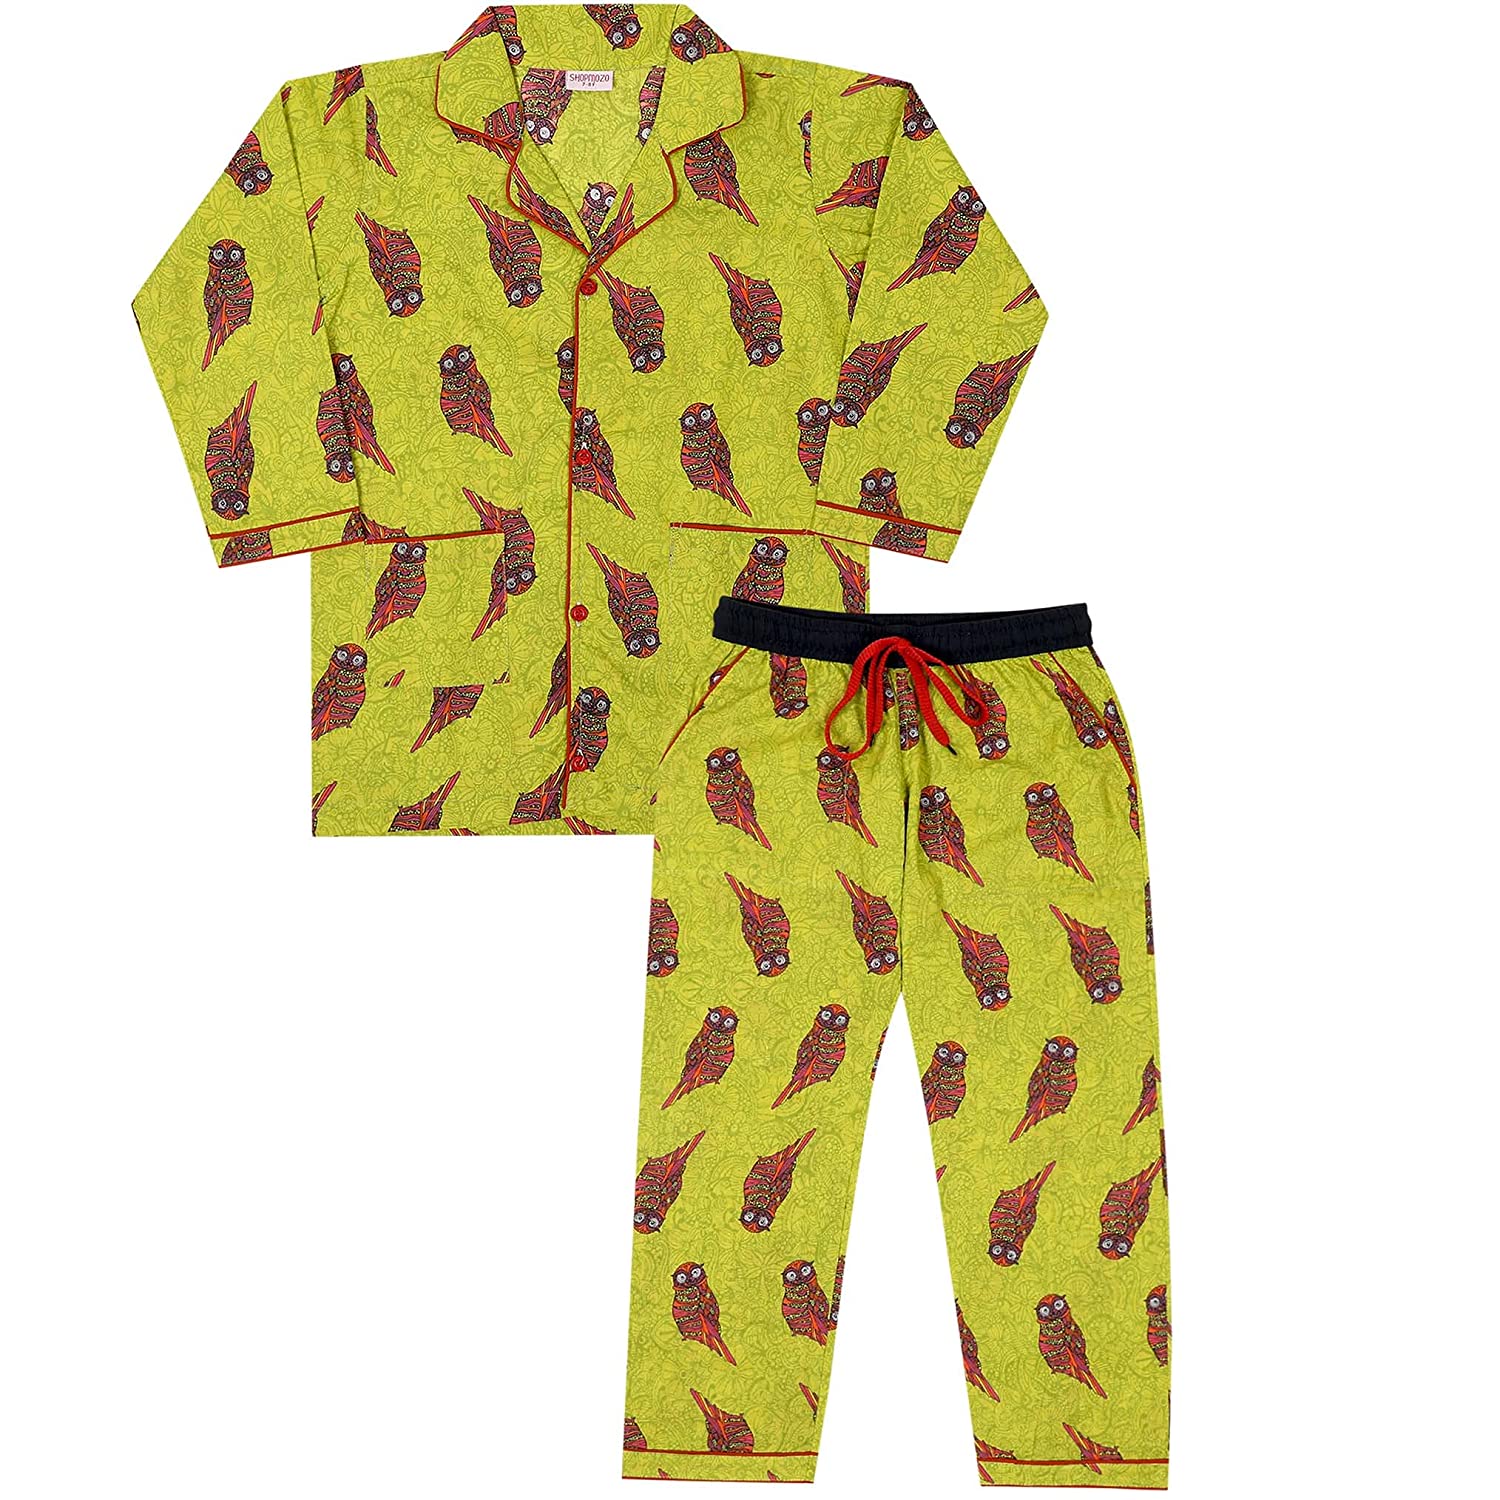 Buy Kryptic Fuchsia & Dark Grey Printed Pyjamas - Pack of 2 for Women's  Online @ Tata CLiQ